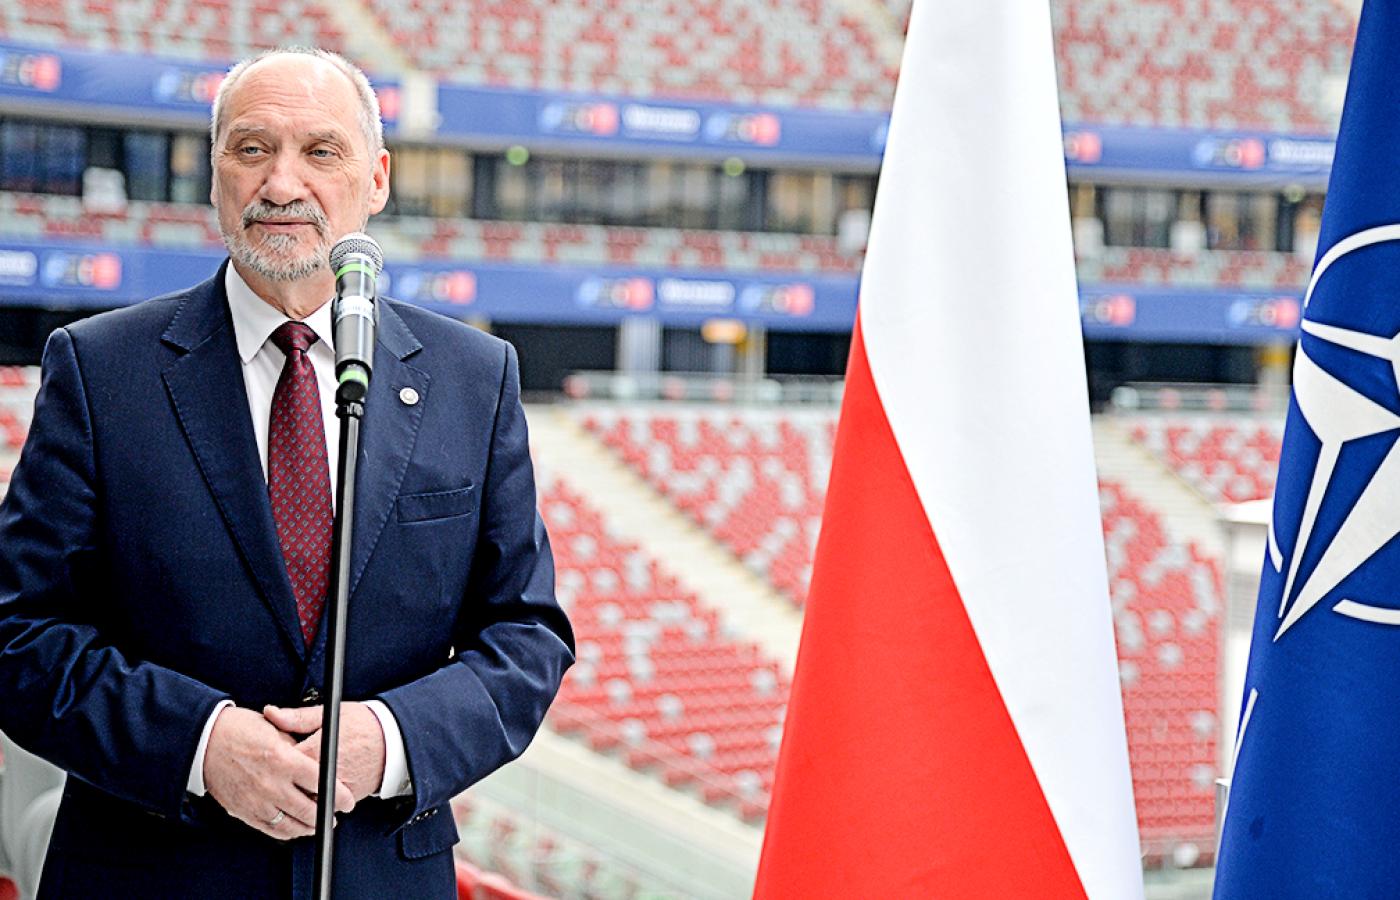 Antoni Macierewicz (wówczas minister obrony), spotkanie przed szczytem NATO w Warszawie, Stadiony Narodowy, 20 czerwca 2016 r.